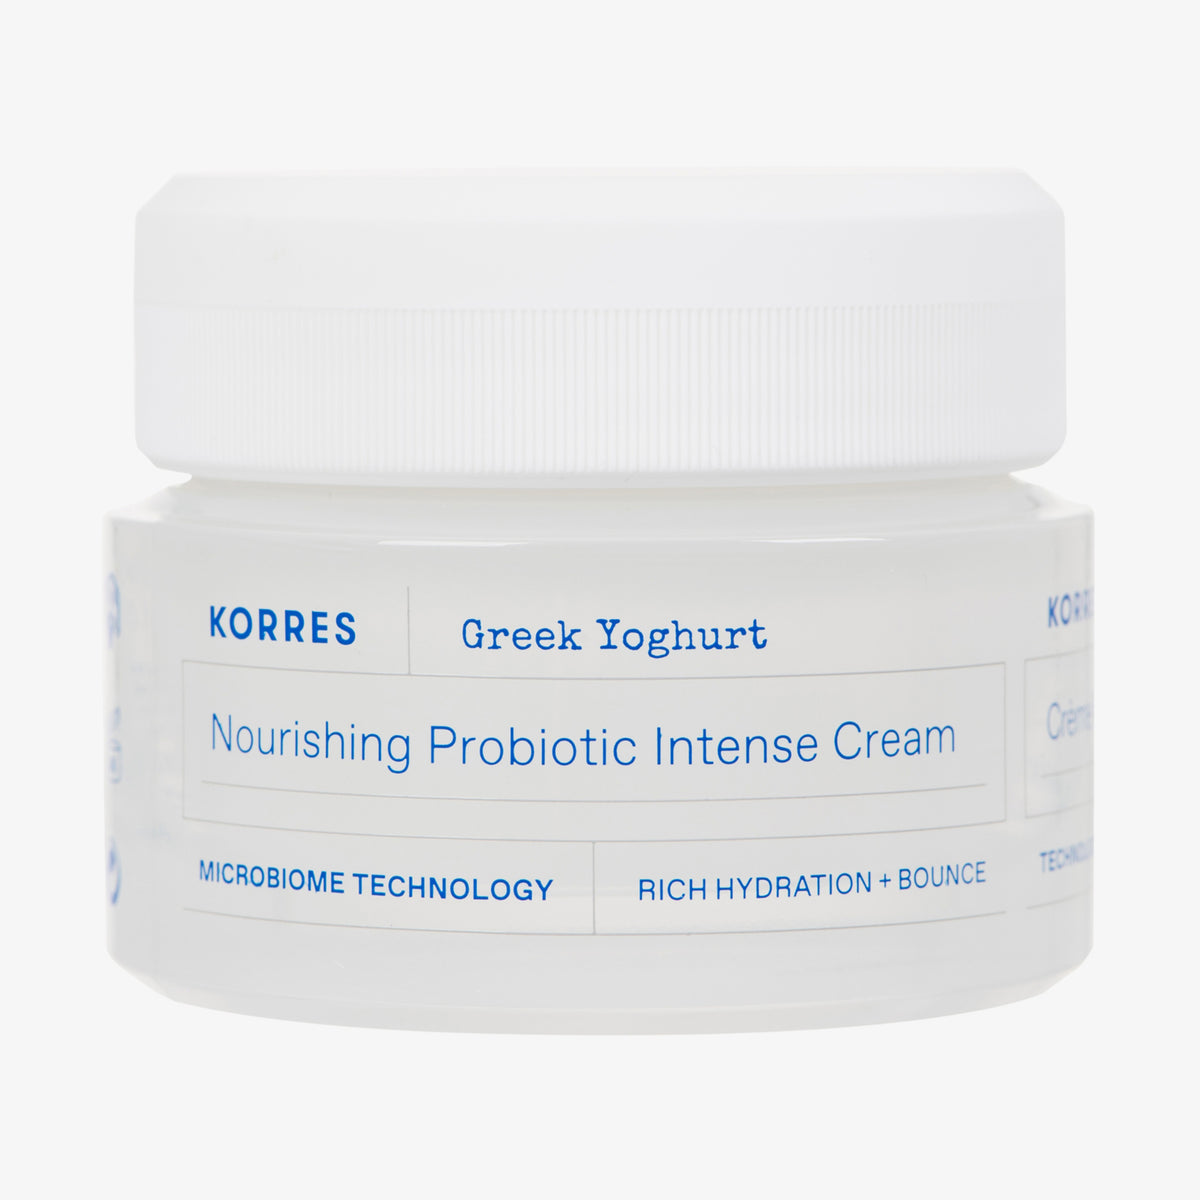 Greek Yoghurt Intensiv nährende probiotische Feuchtigkeitscreme